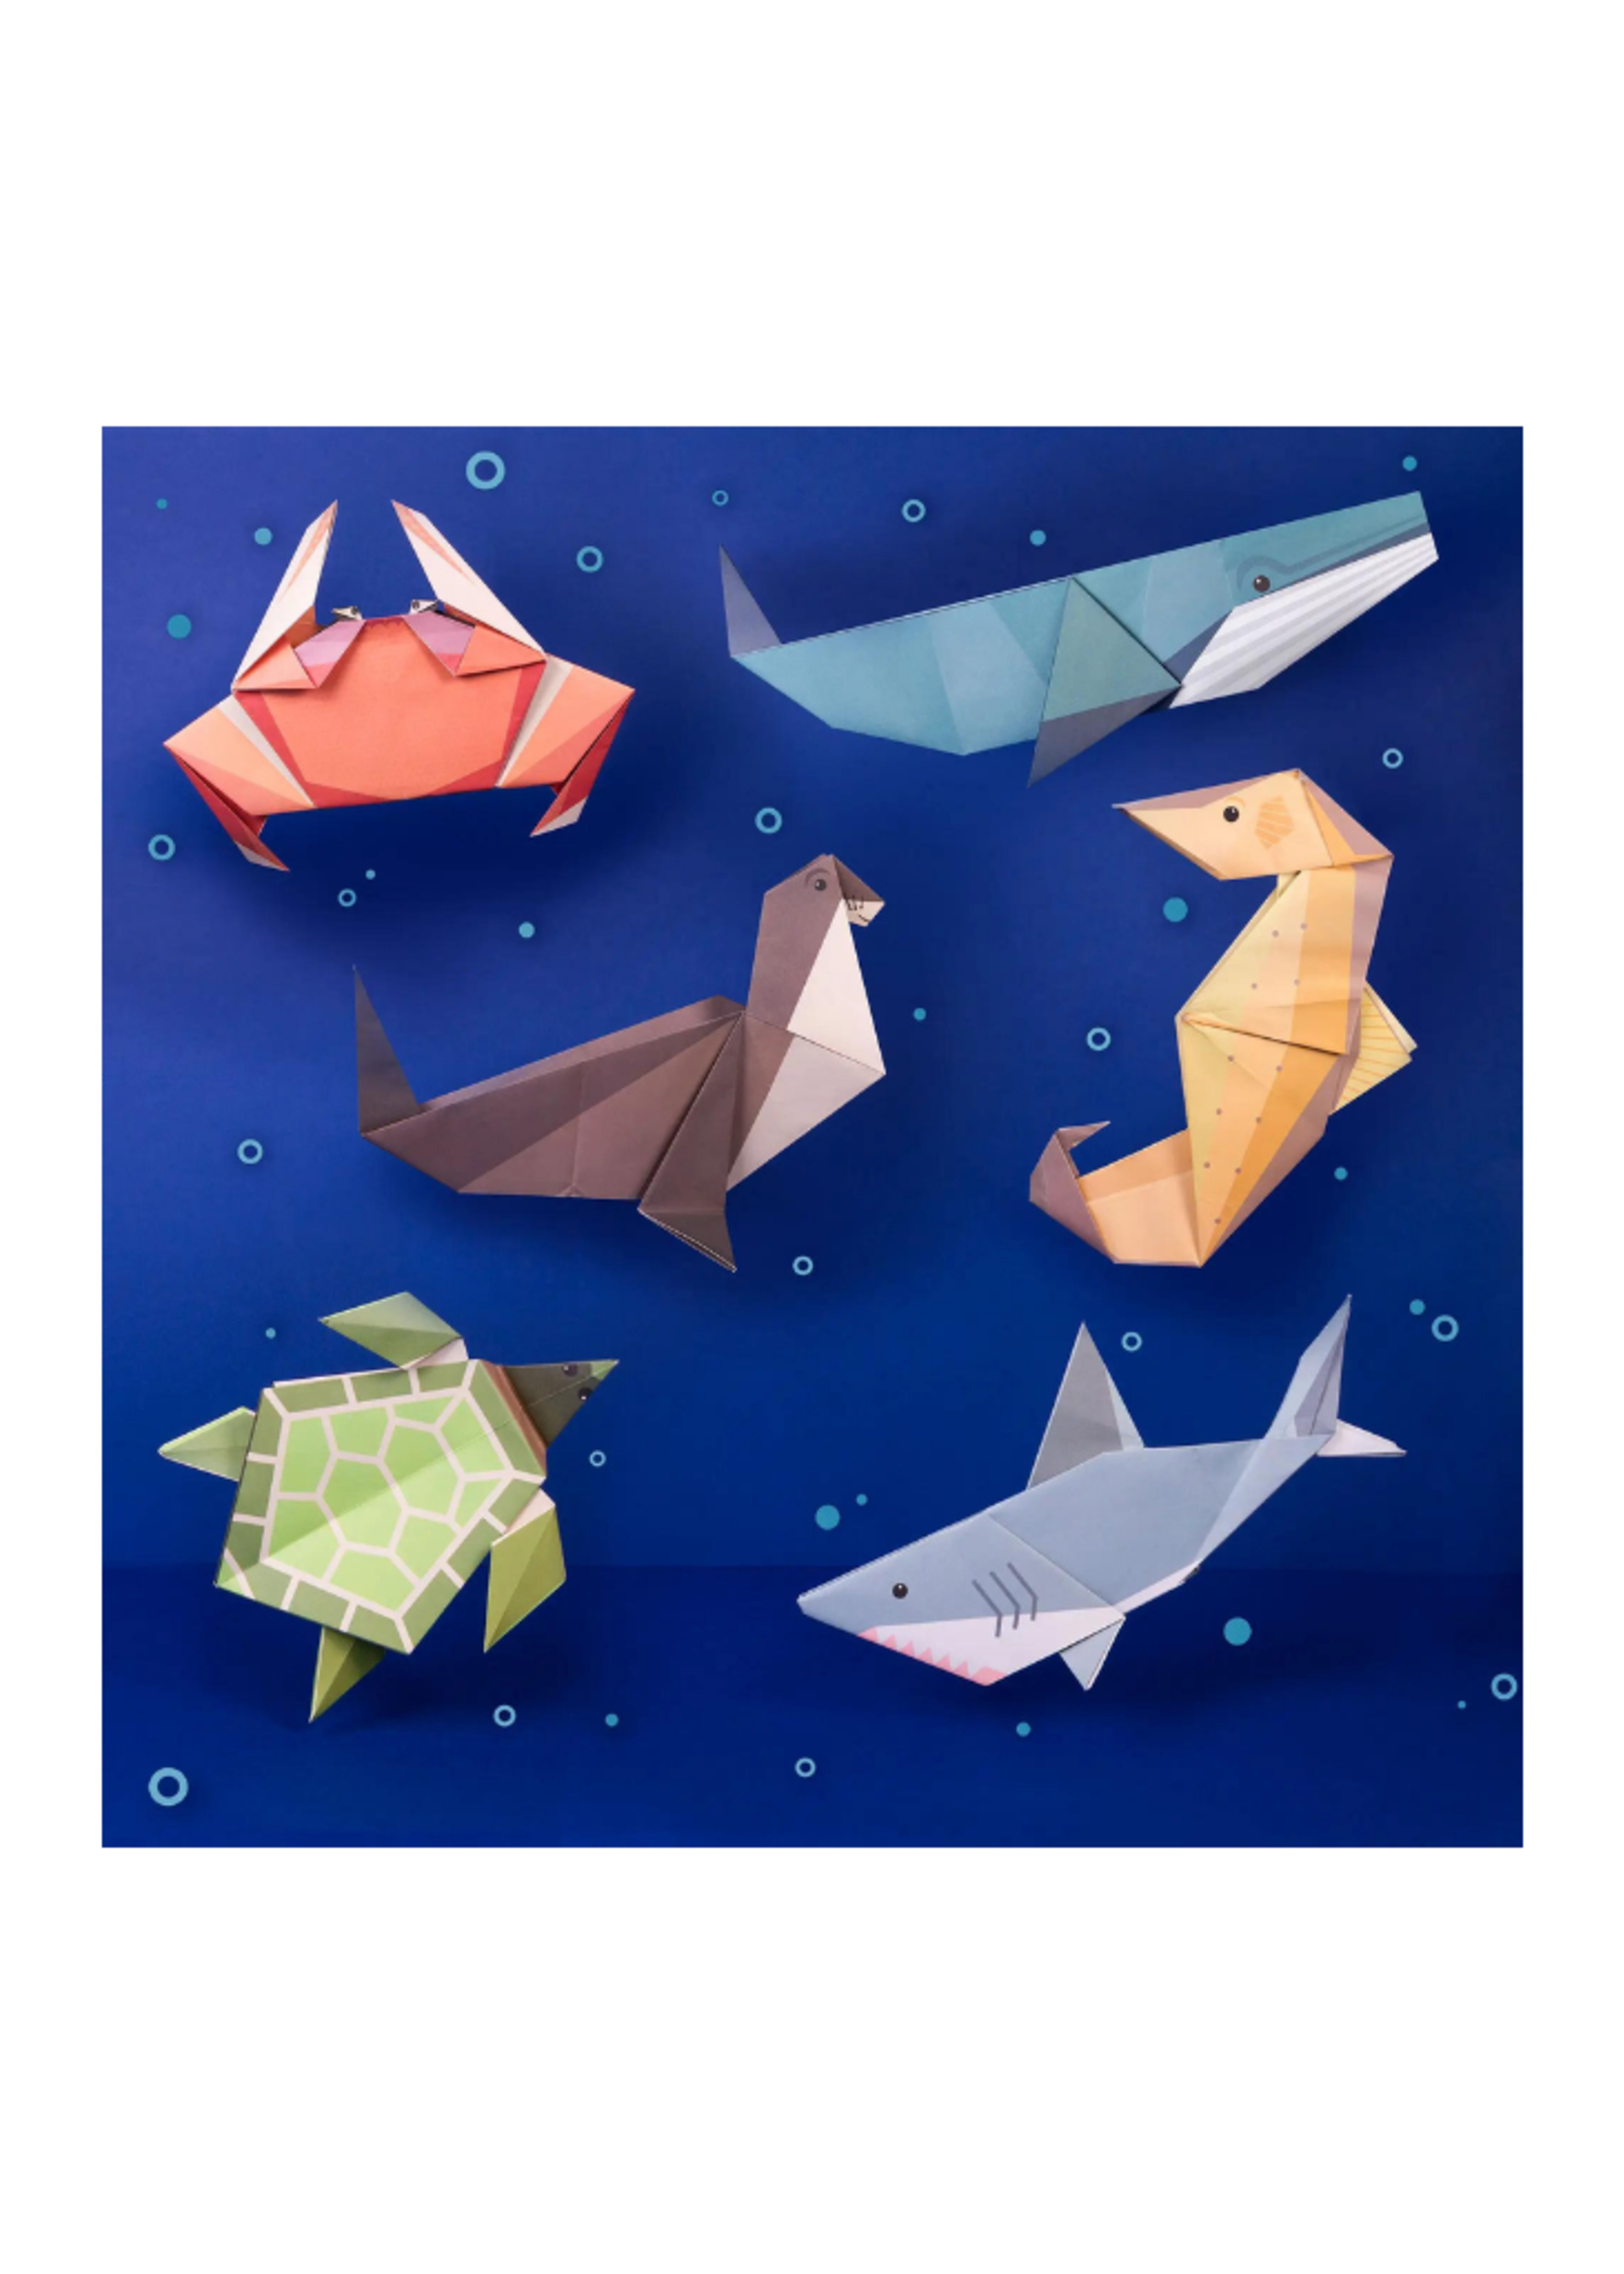 Clockwork Soldier Clockwork Soldier - Create Your Own Giant Ocean Origami